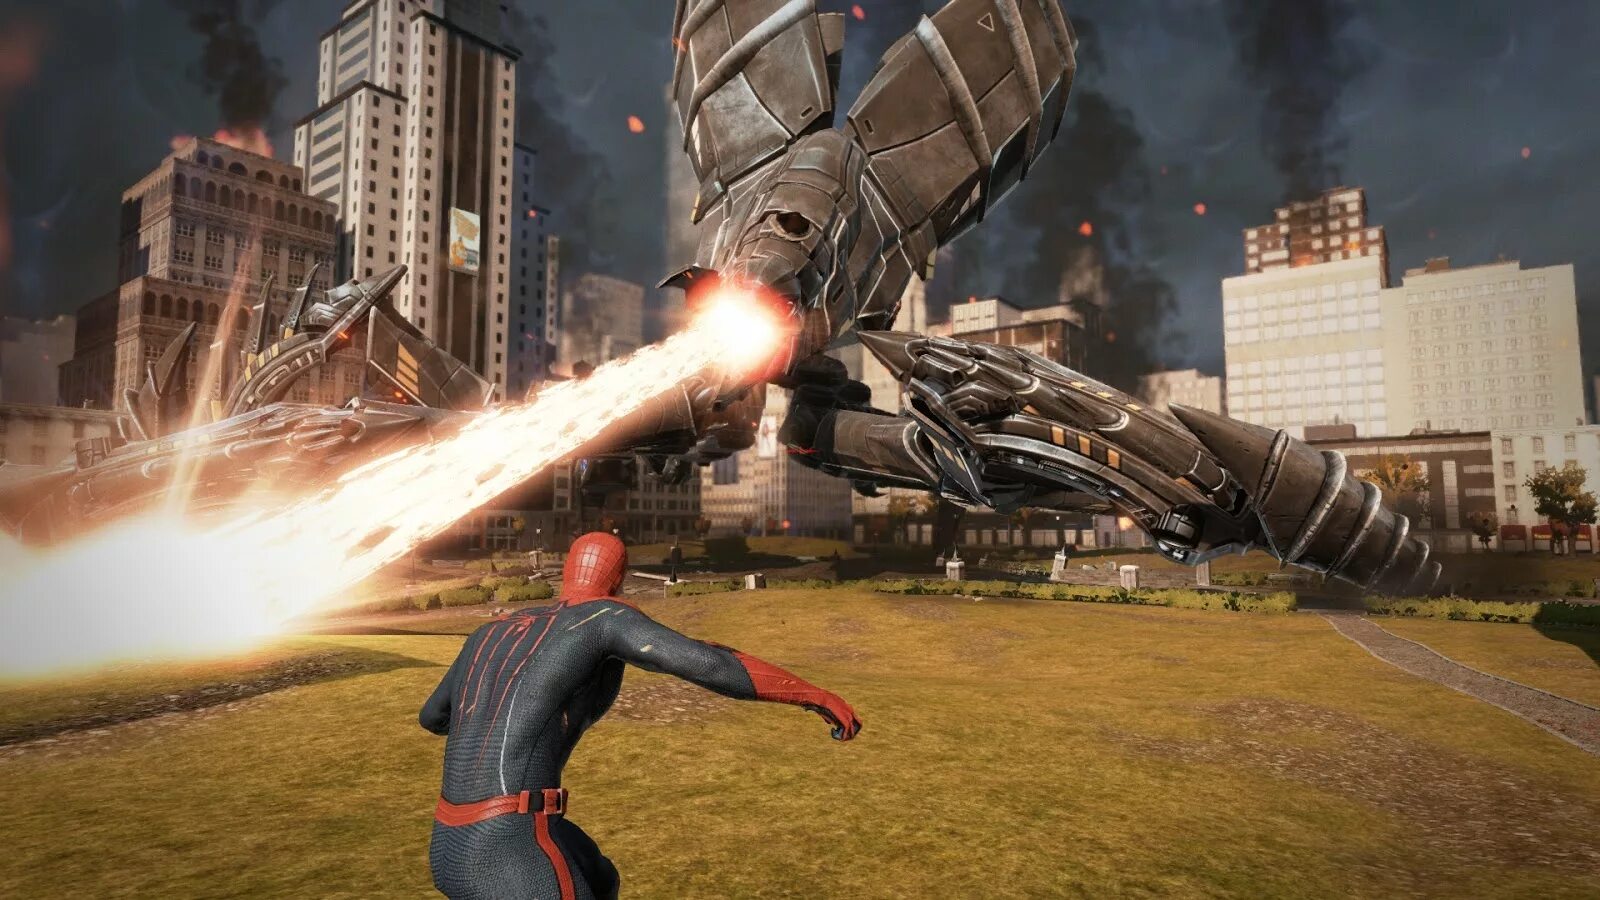 Spider man игра 2012. The amazing Spider-man игра. The amazing Spider-man 2 игра. Человек паук игра 2012. The amazing Spider-man 1 игра.